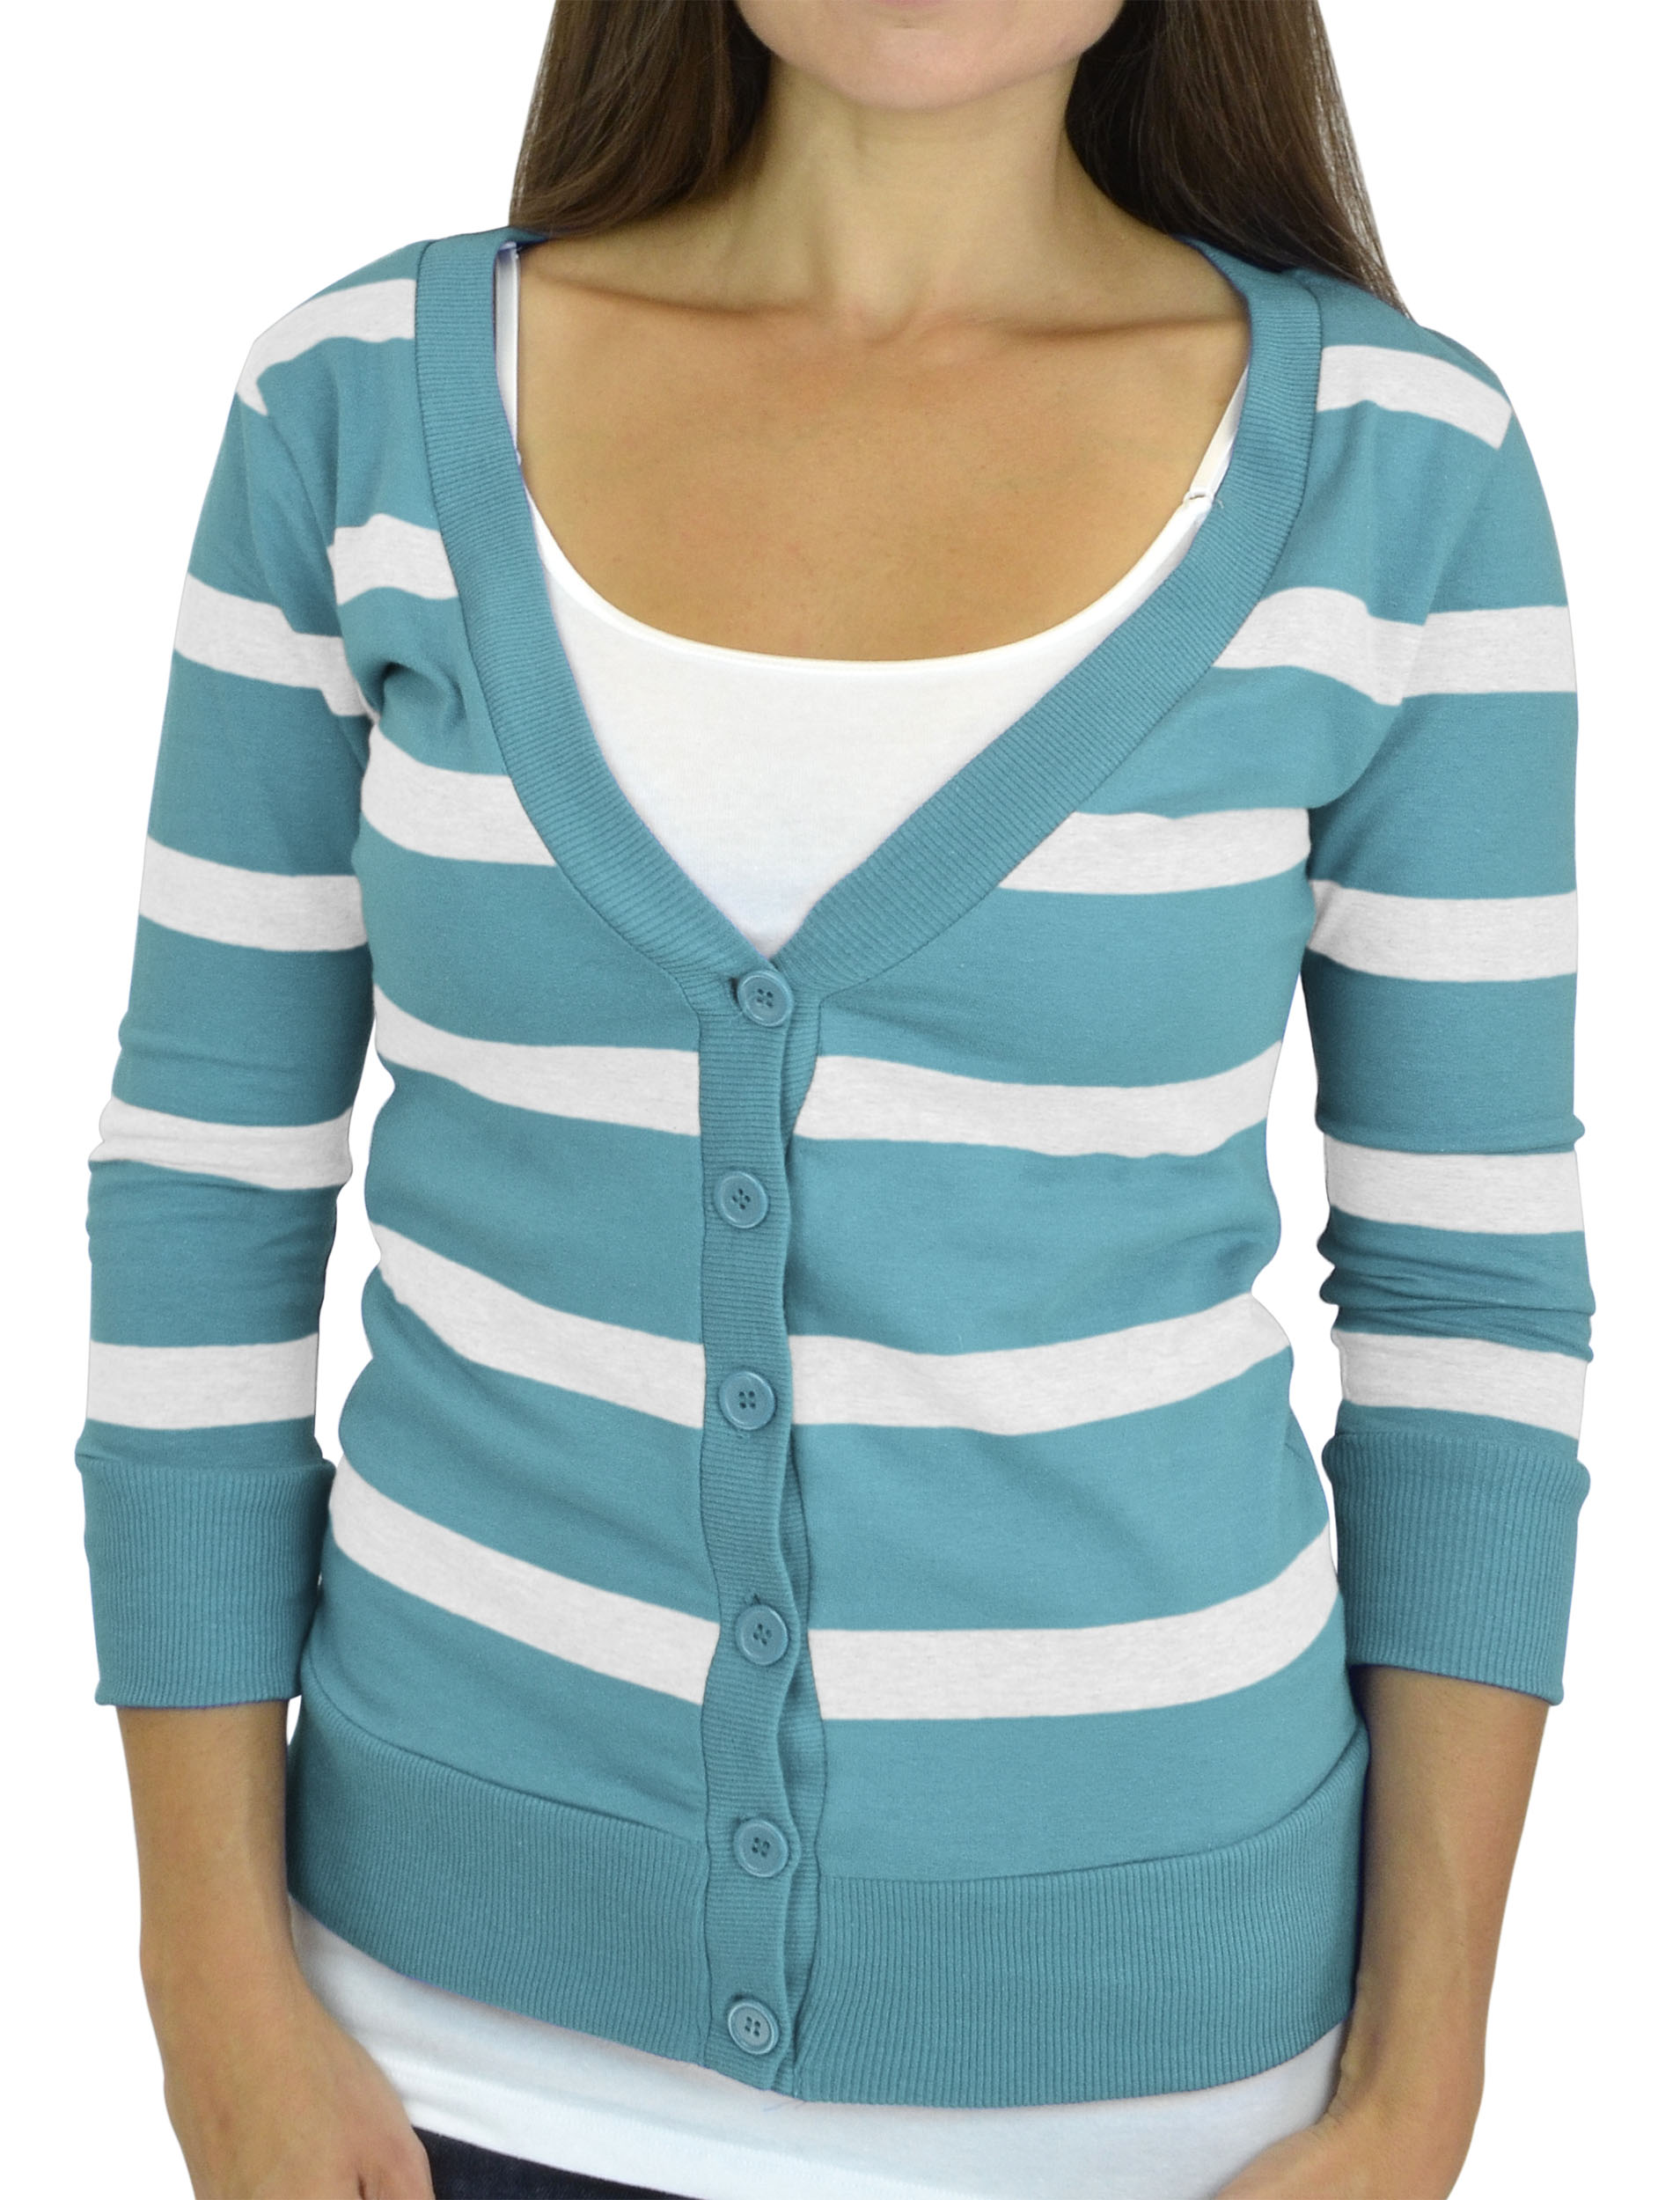 Belle Donne - Women / Girl Junior Size Soft 3/4 Sleeve V-Neck Sweater Cardigans - White/Medium